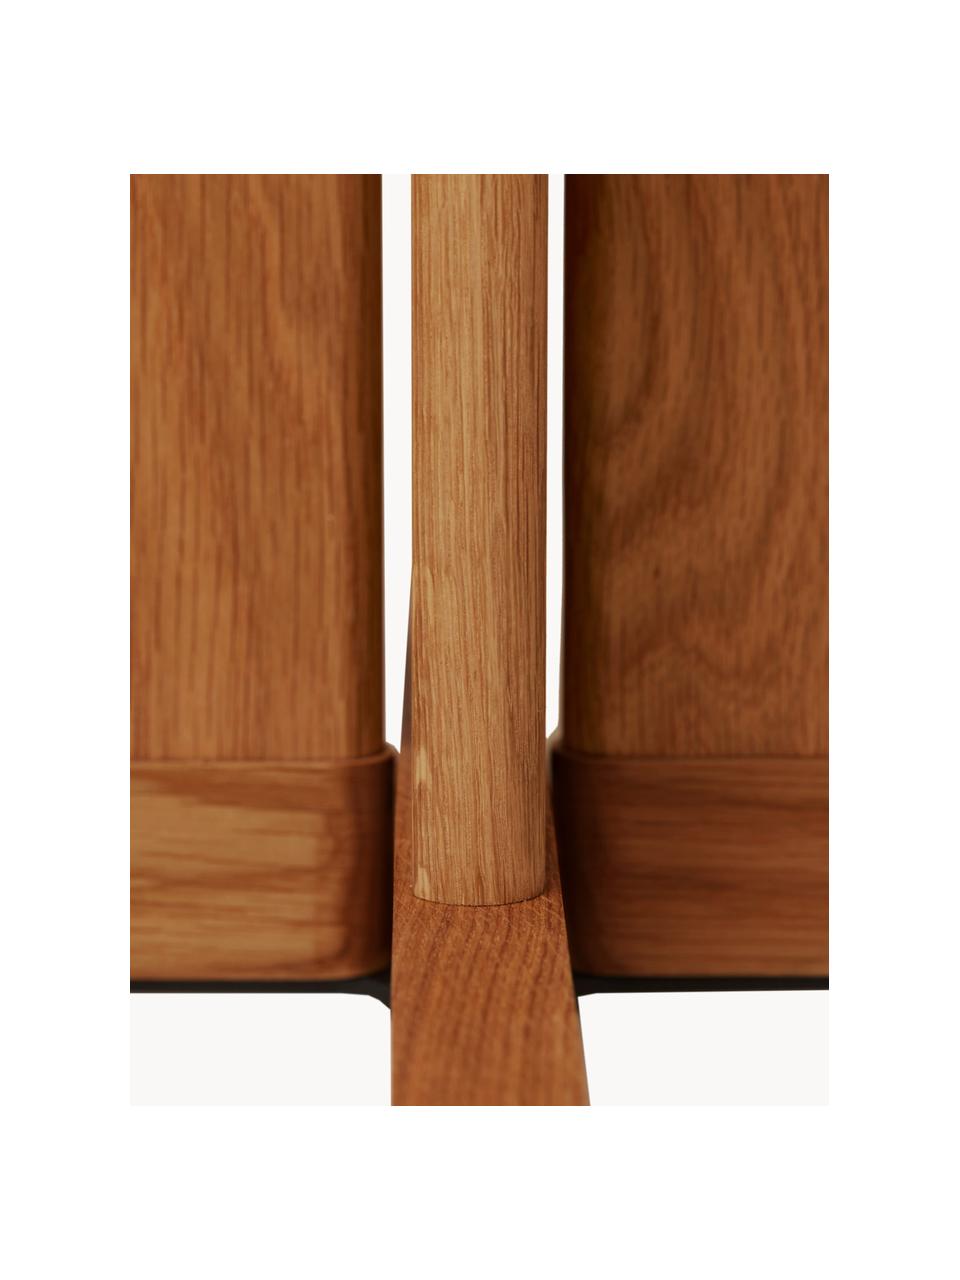 Stół do jadalni z drewna dębowego Quatrefoil, 68 x 68 cm, Drewno dębowe, Drewno dębowe, S 68 x G 68 cm